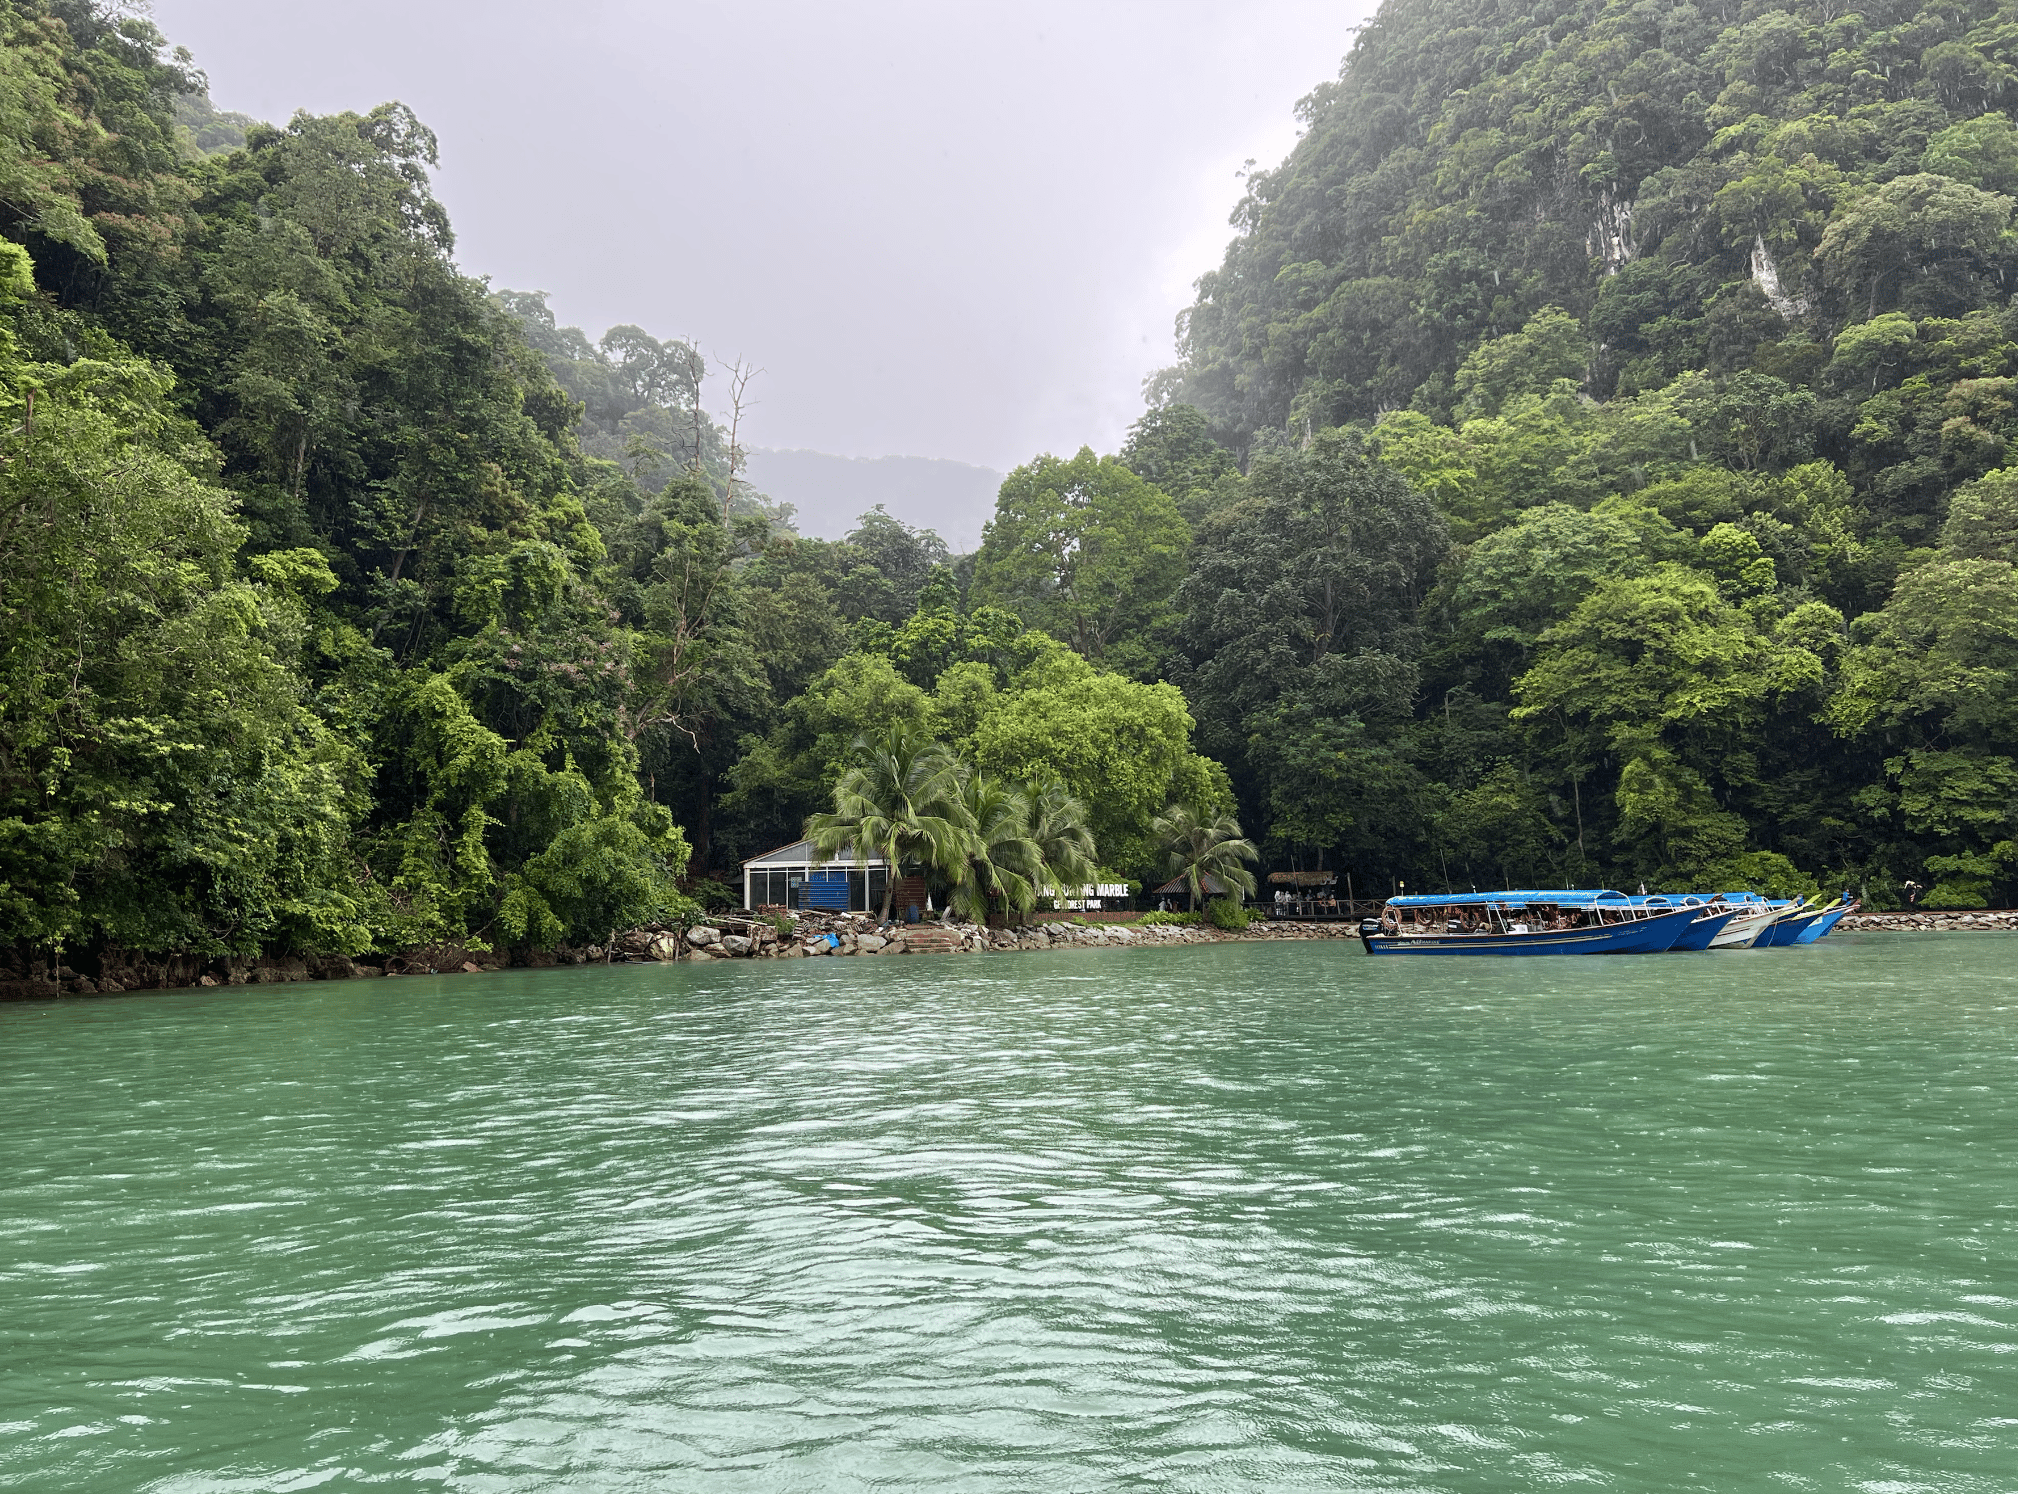 l'ile de dayand bunting dans l'archipel de langkawi en malaisie